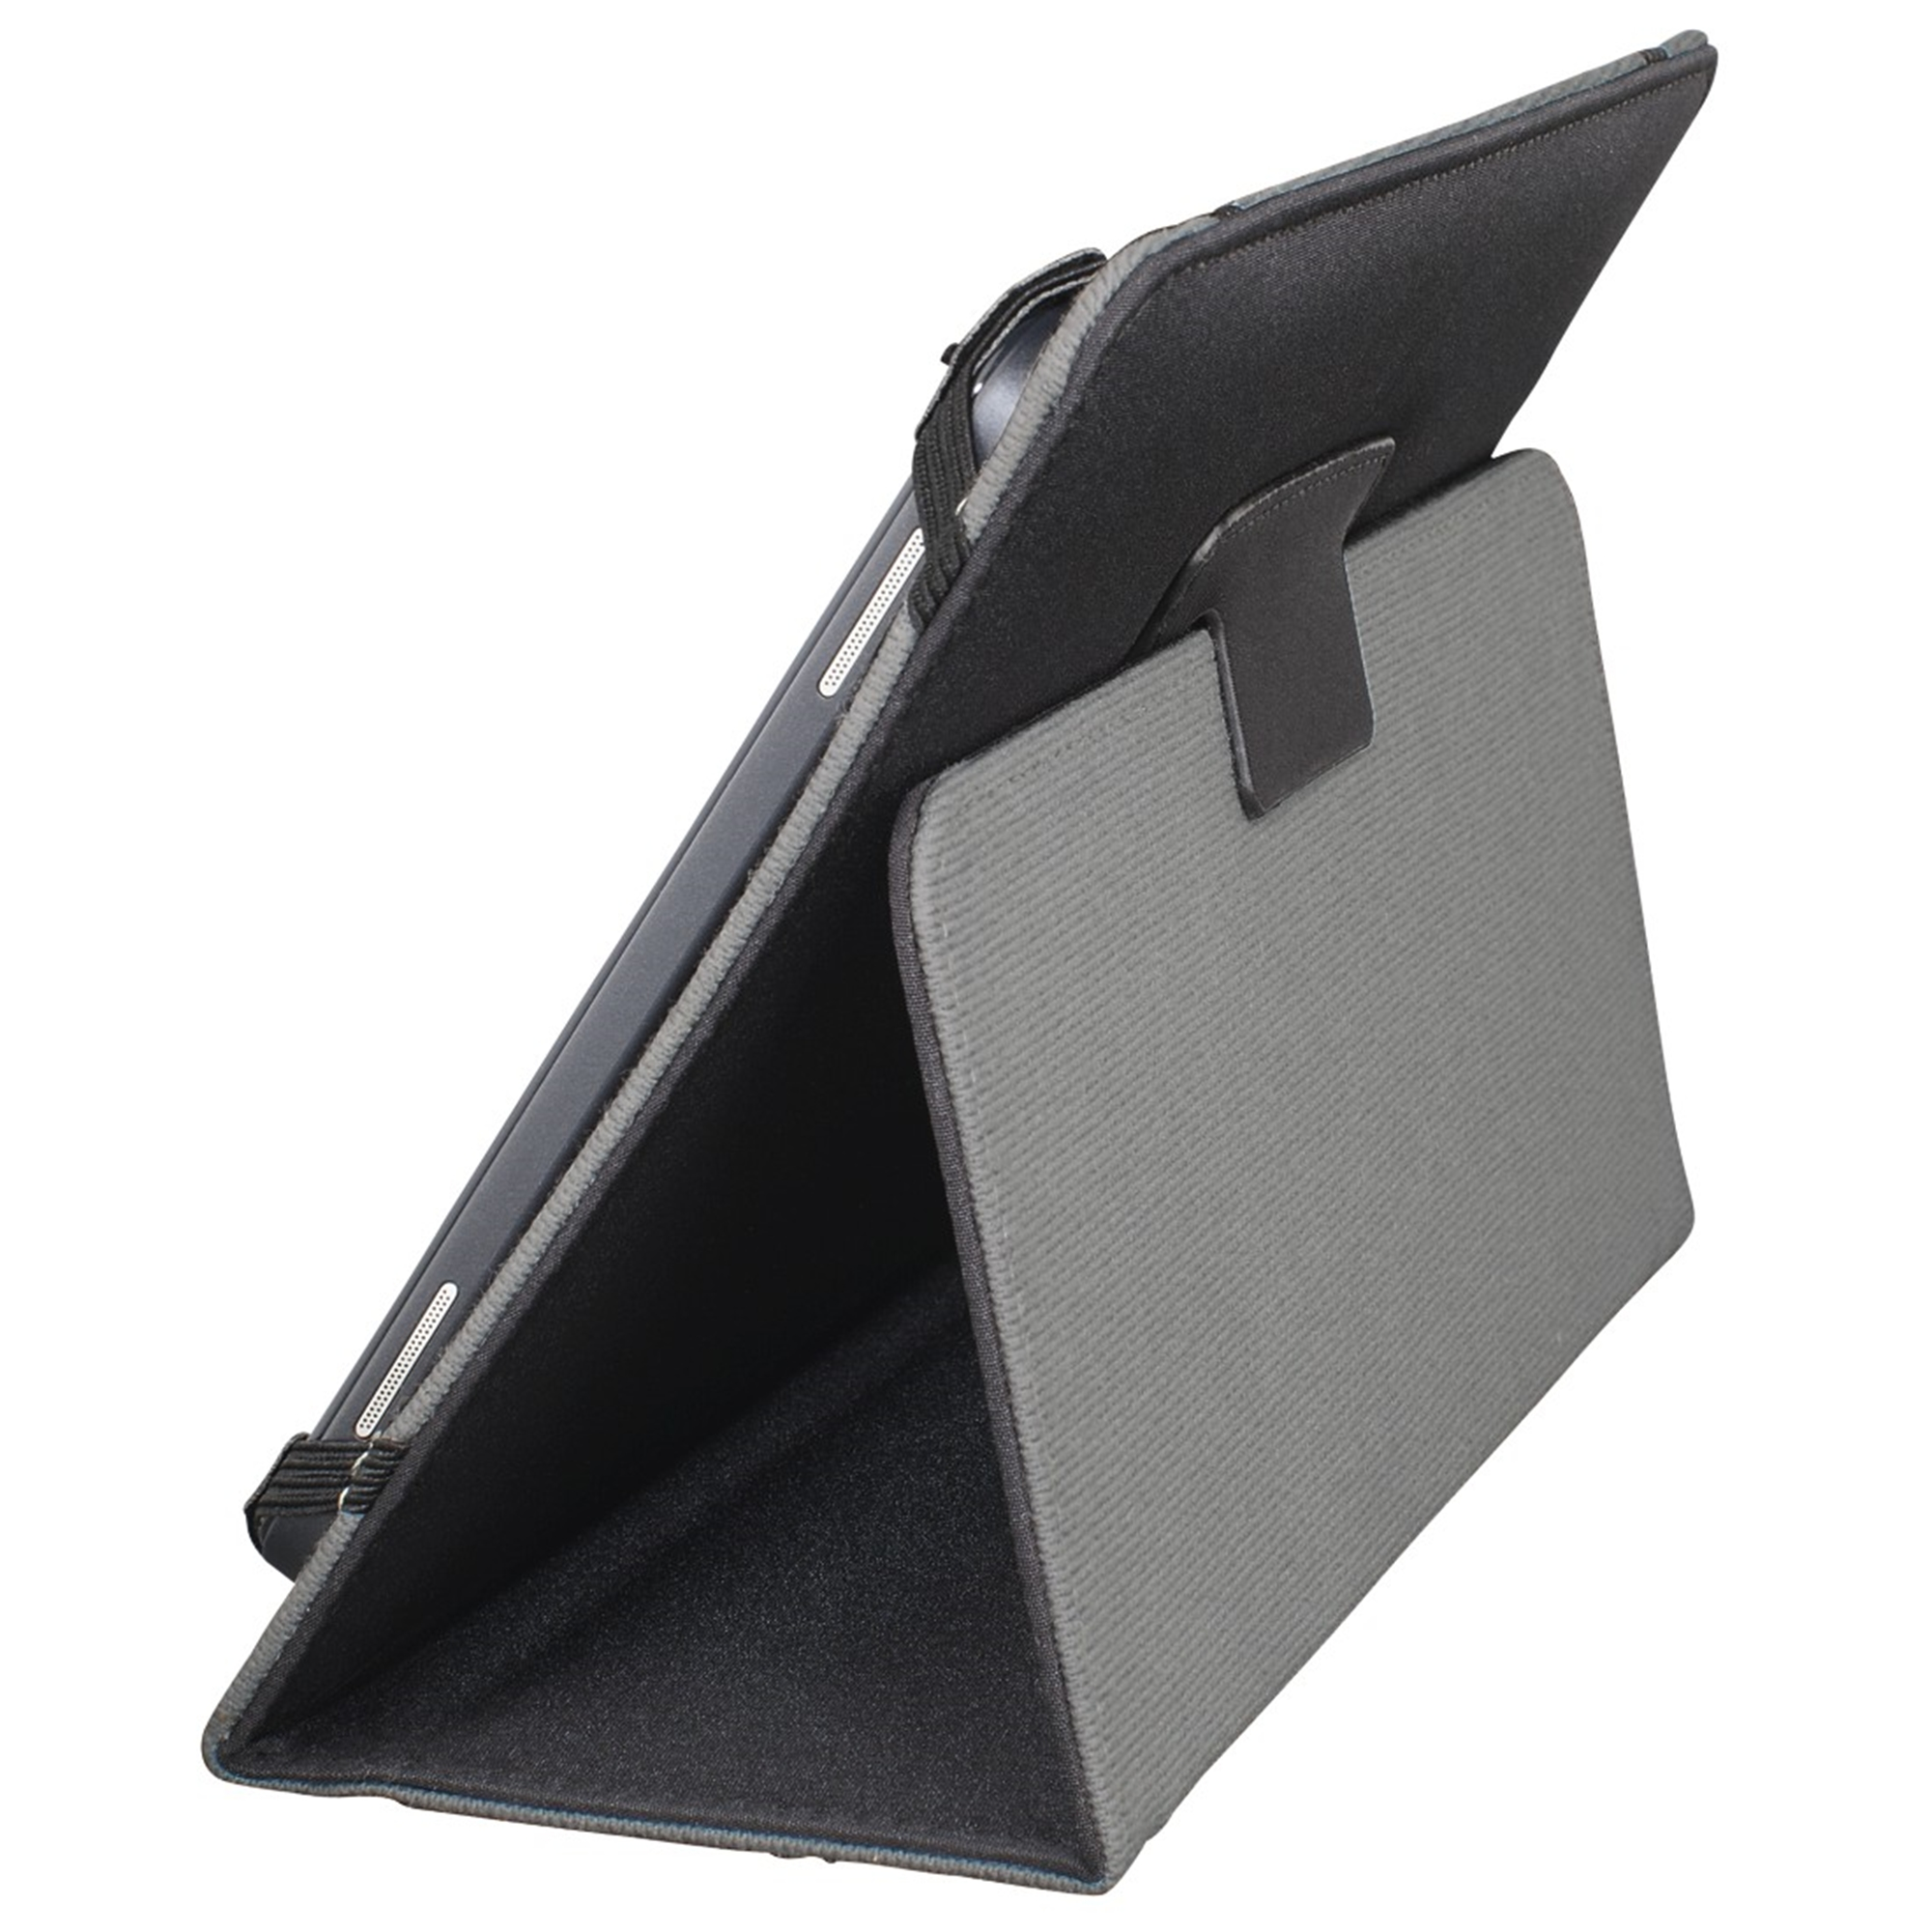 HAMA Strap Tablet-Case Universal für Flip Cover Schwarz Polyurethan